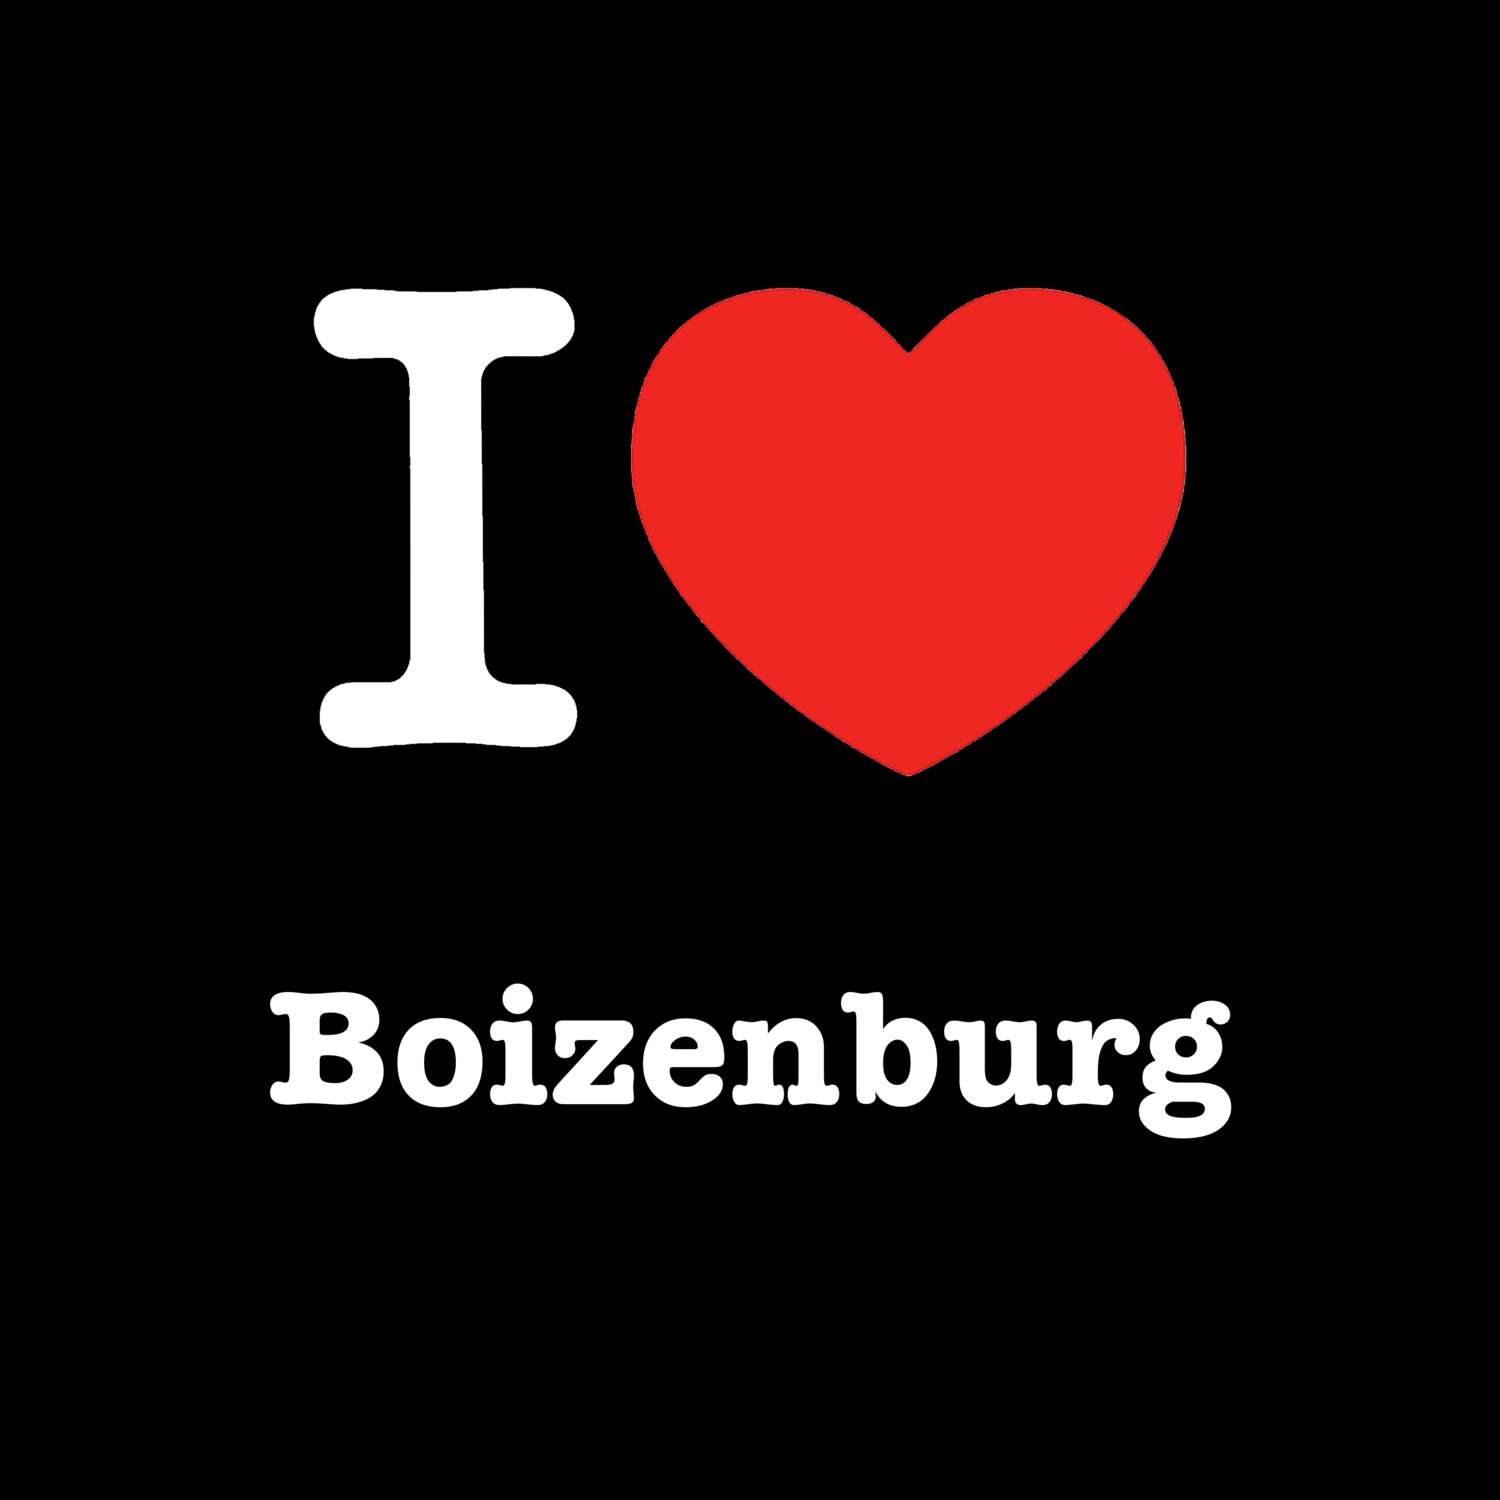 Boizenburg T-Shirt »I love«